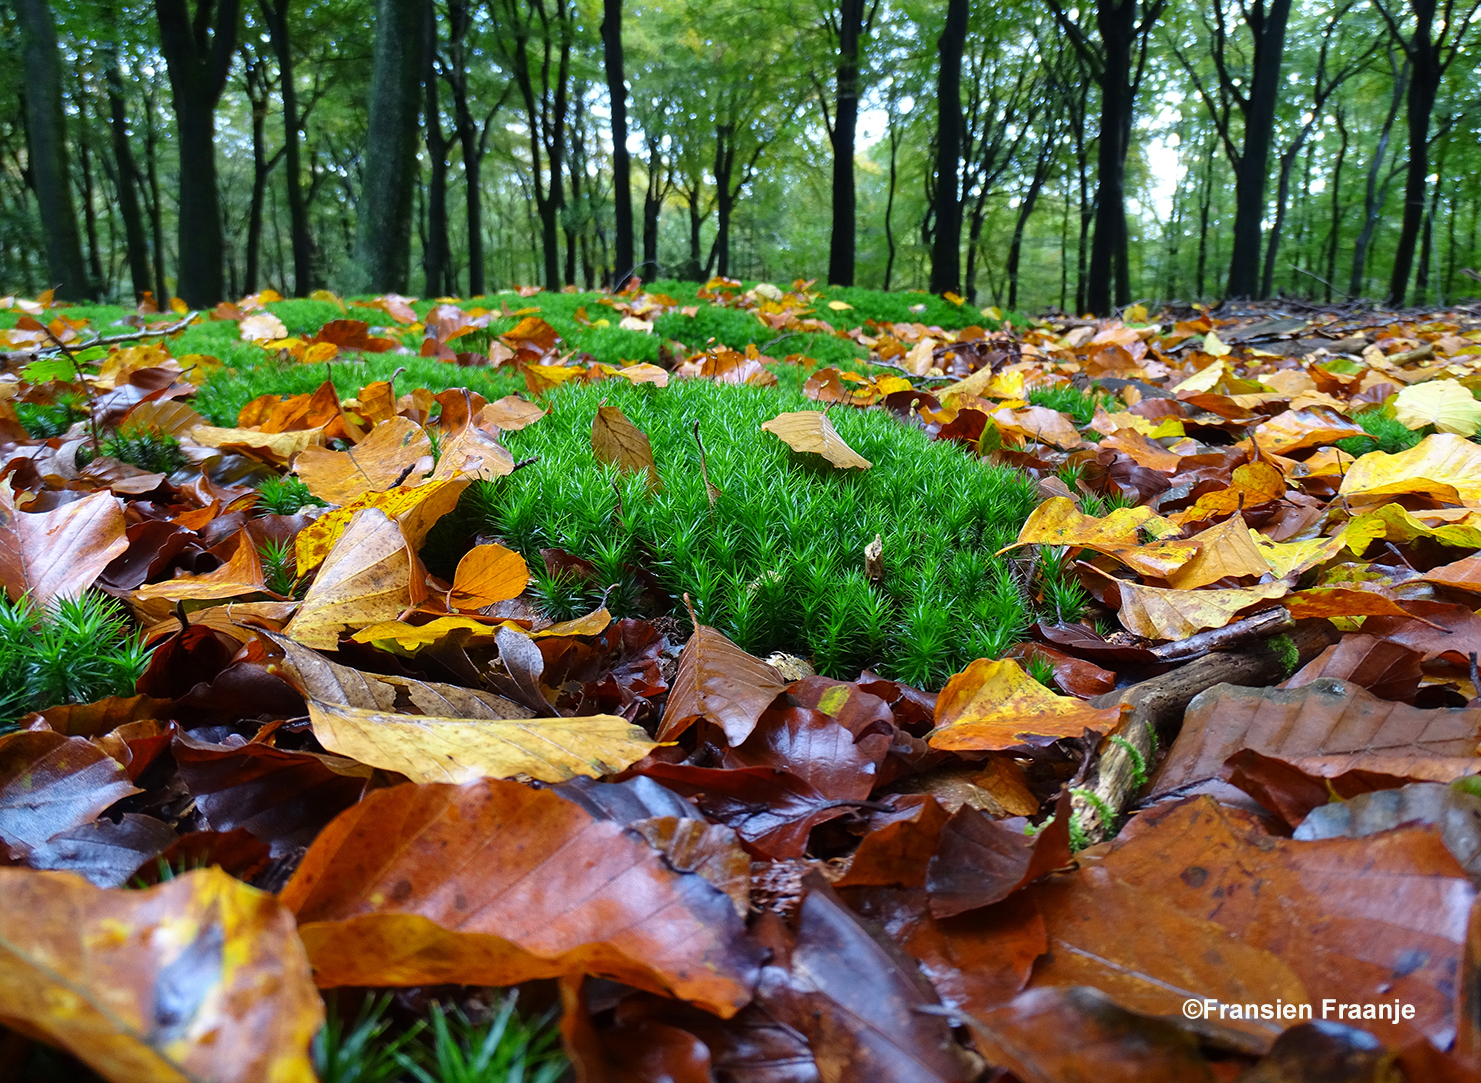  Een klein groen tapijtje tussen de gouden herfstbladeren - Foto: ©Fransien Fraanje.